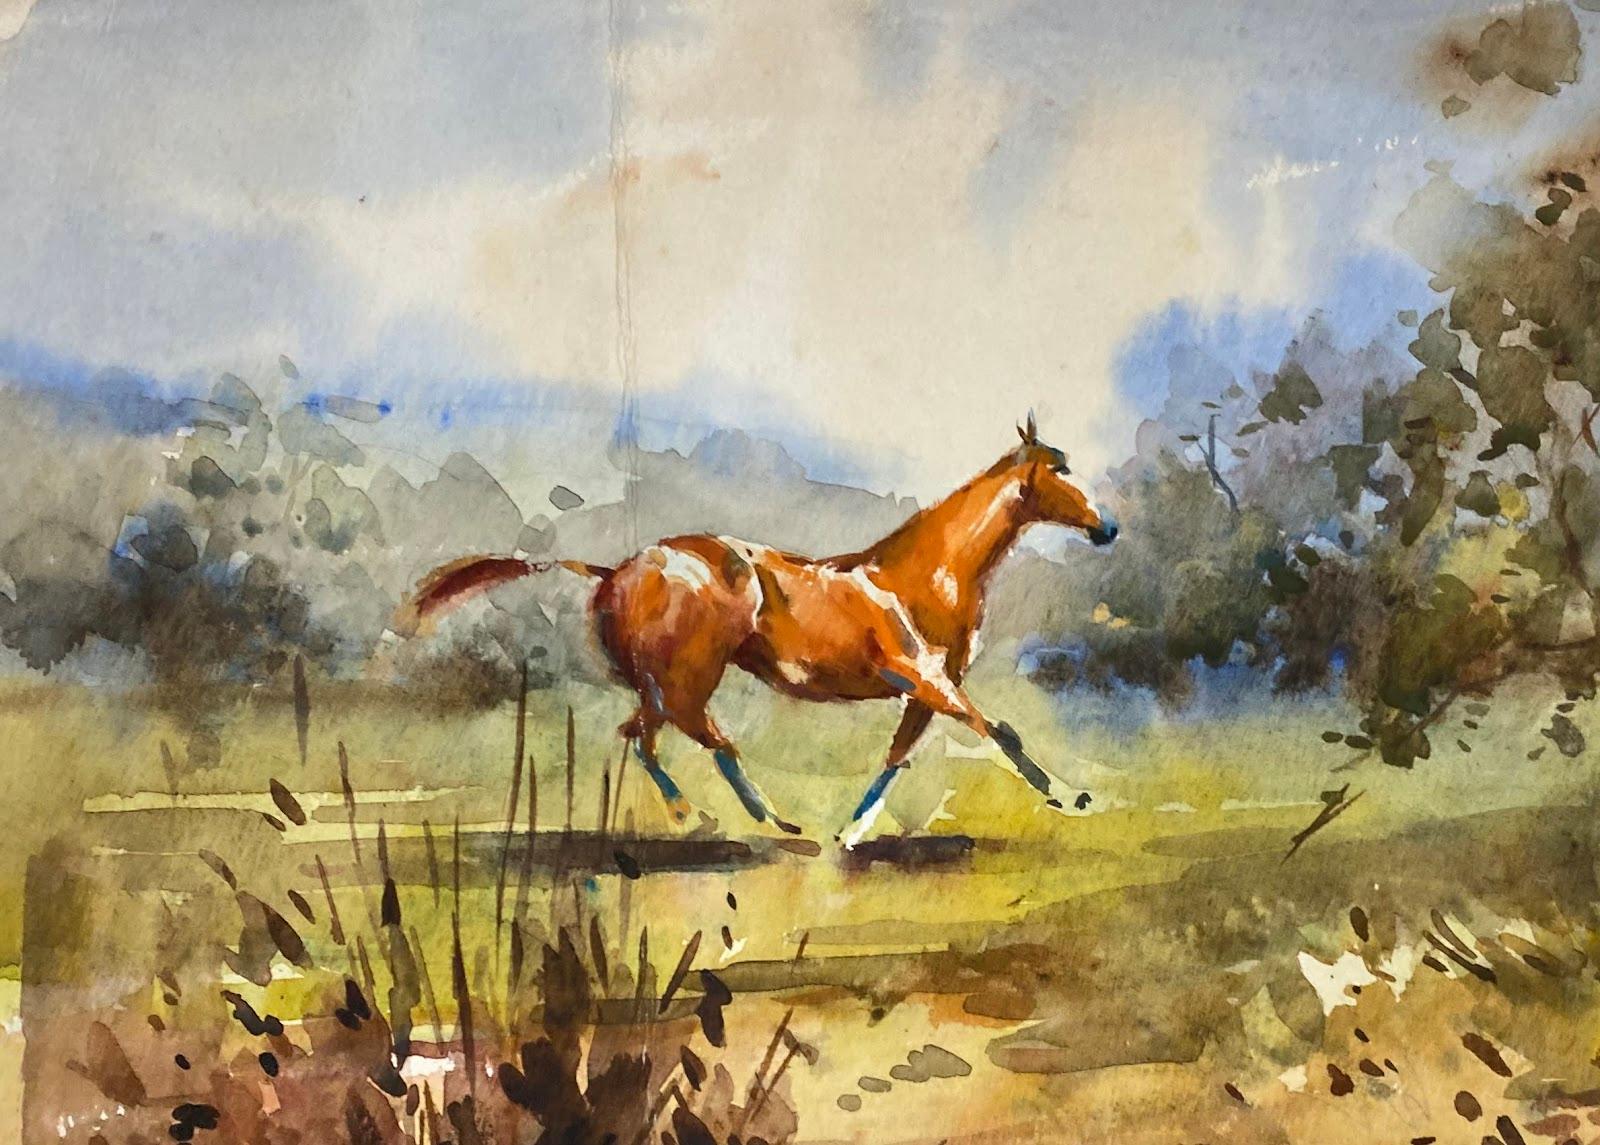 Peinture impressionniste britannique représentant un cheval piqué sur un terrain par Stream  - Art de Frank Duffield